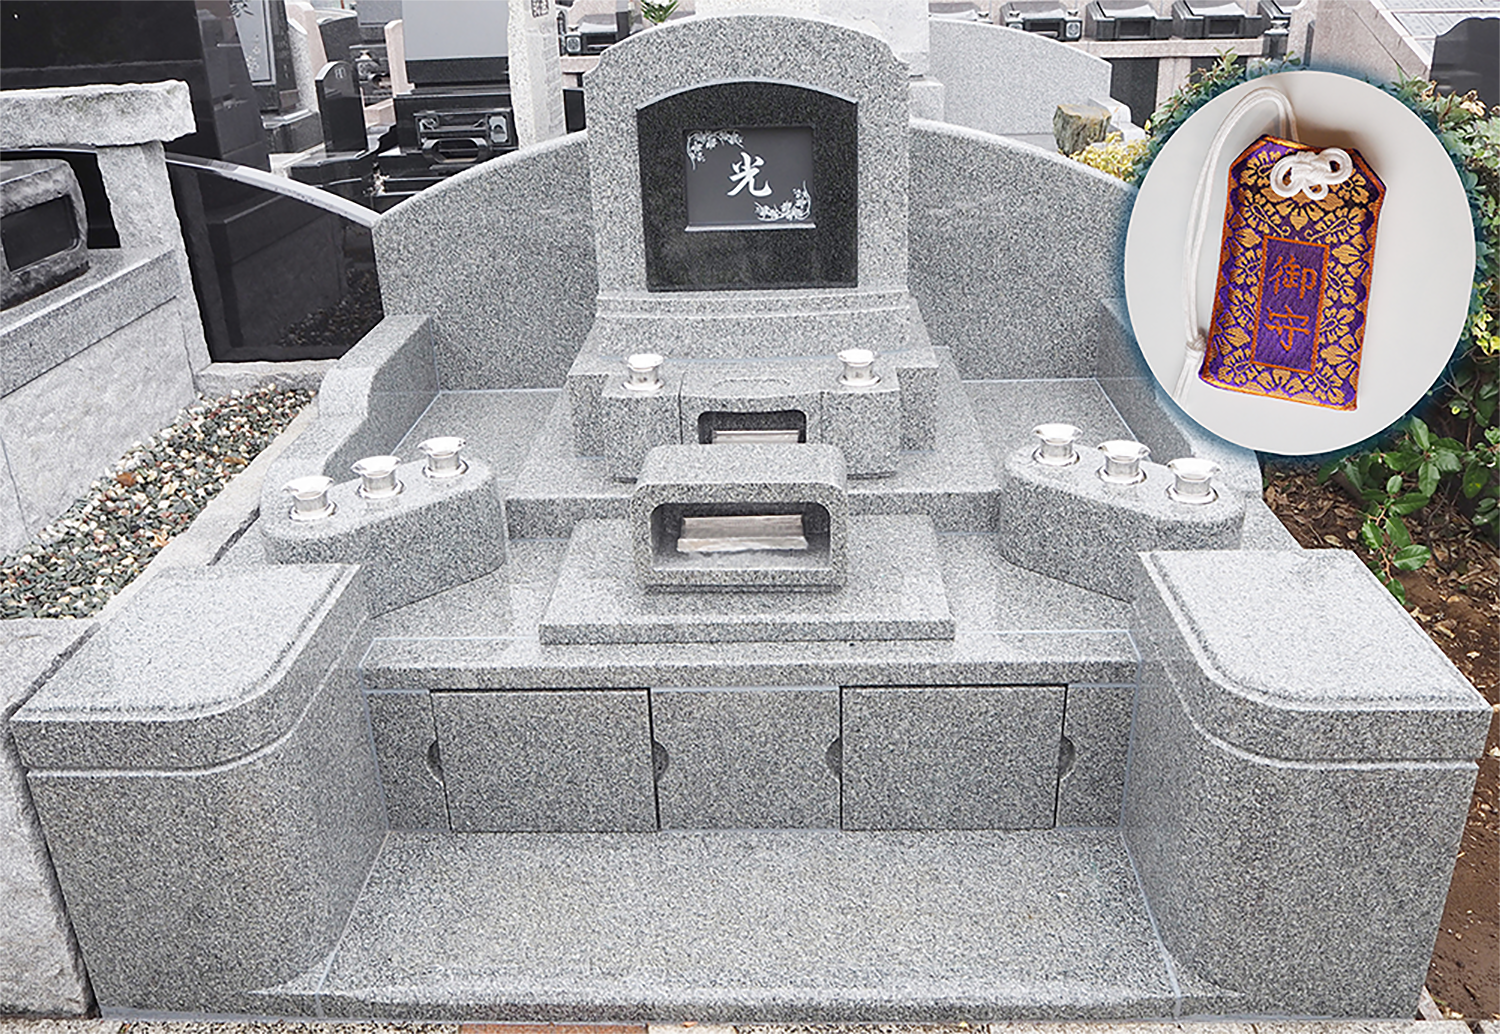 日本初のbluetooth対応の墓石 お守り De お墓参り 参拝者によって家名が自動で切り替わる共同墓を販売開始 株式会社ニチリョクのプレスリリース